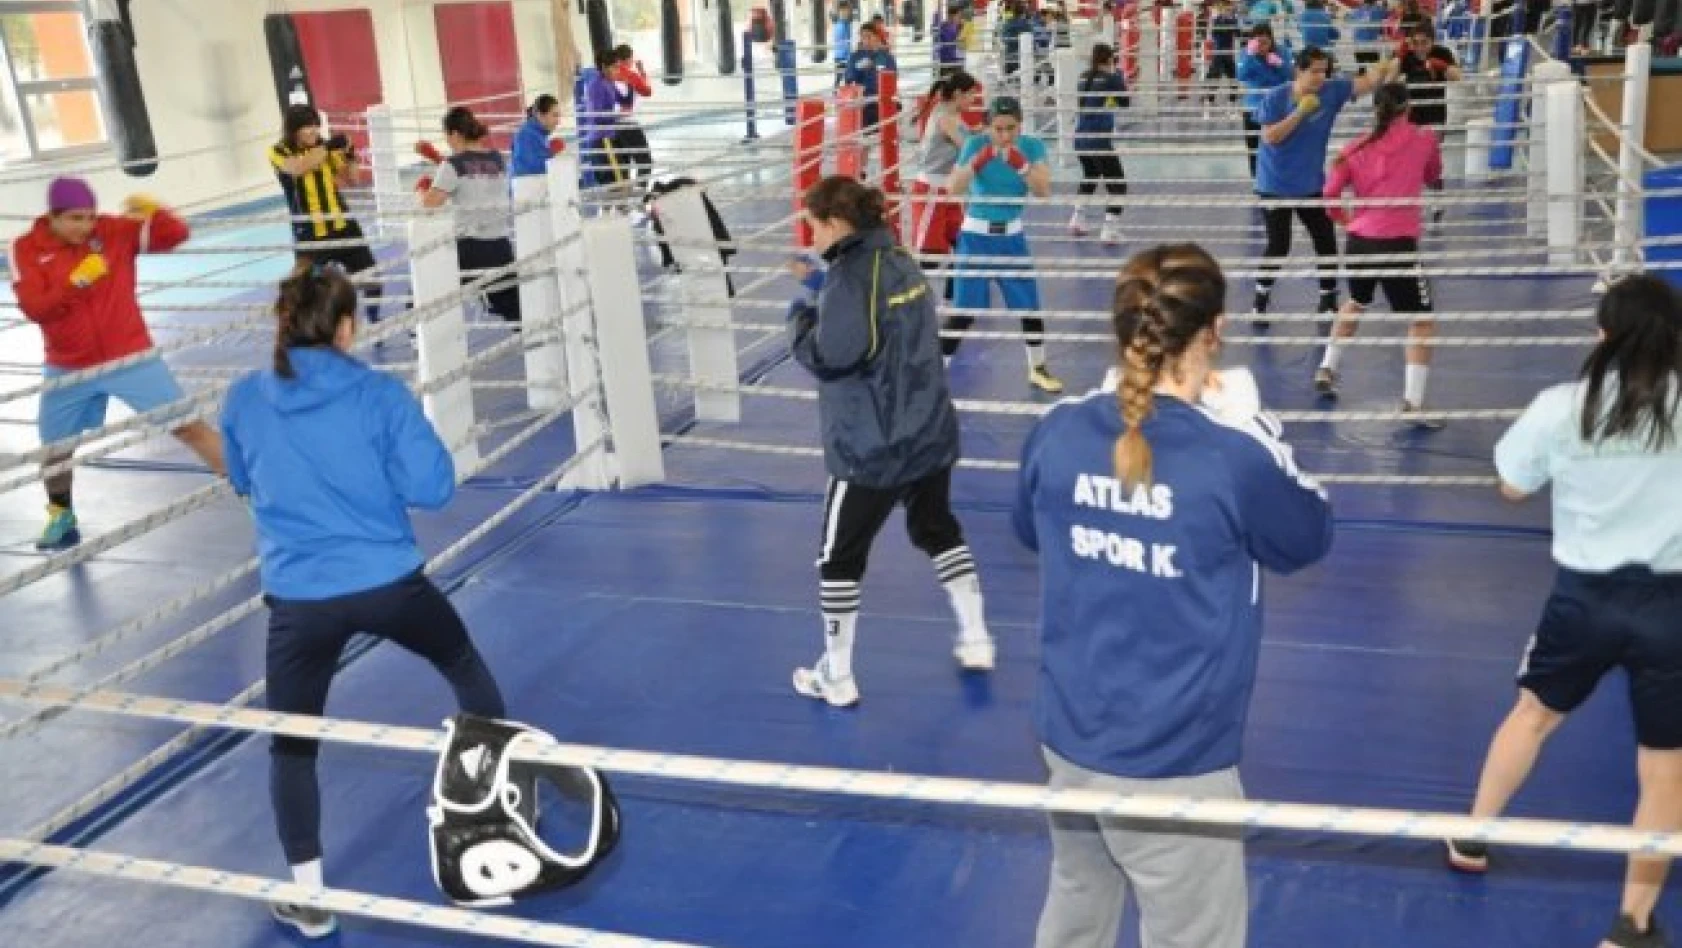 Milli boksörlerin Kastamonu kampı sona erdi